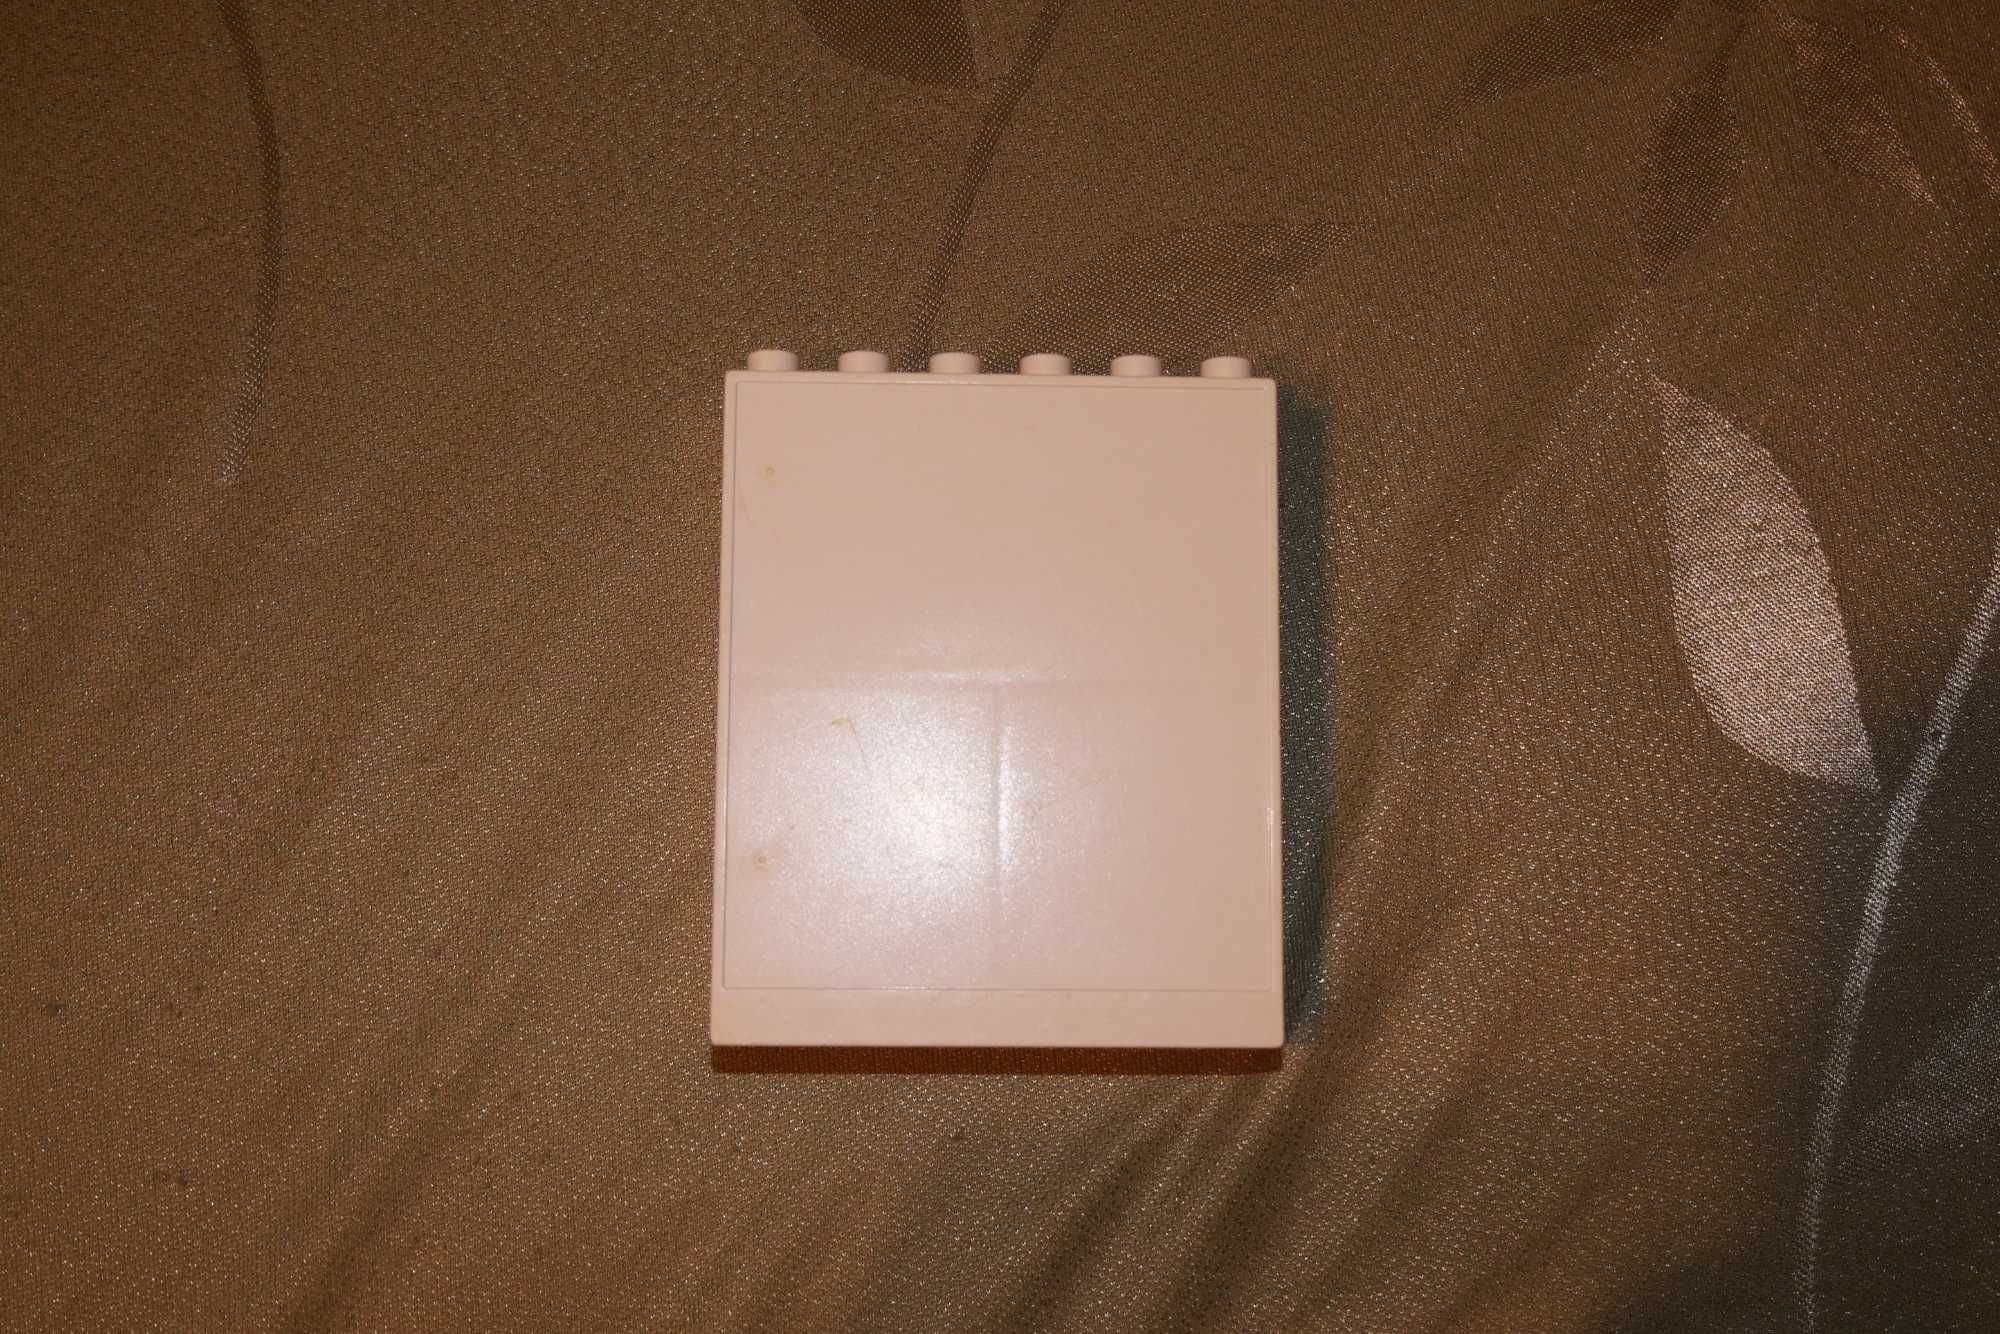 Lego Duplo klocek biała szafa półka półki słupek słup + szyba niebiesk